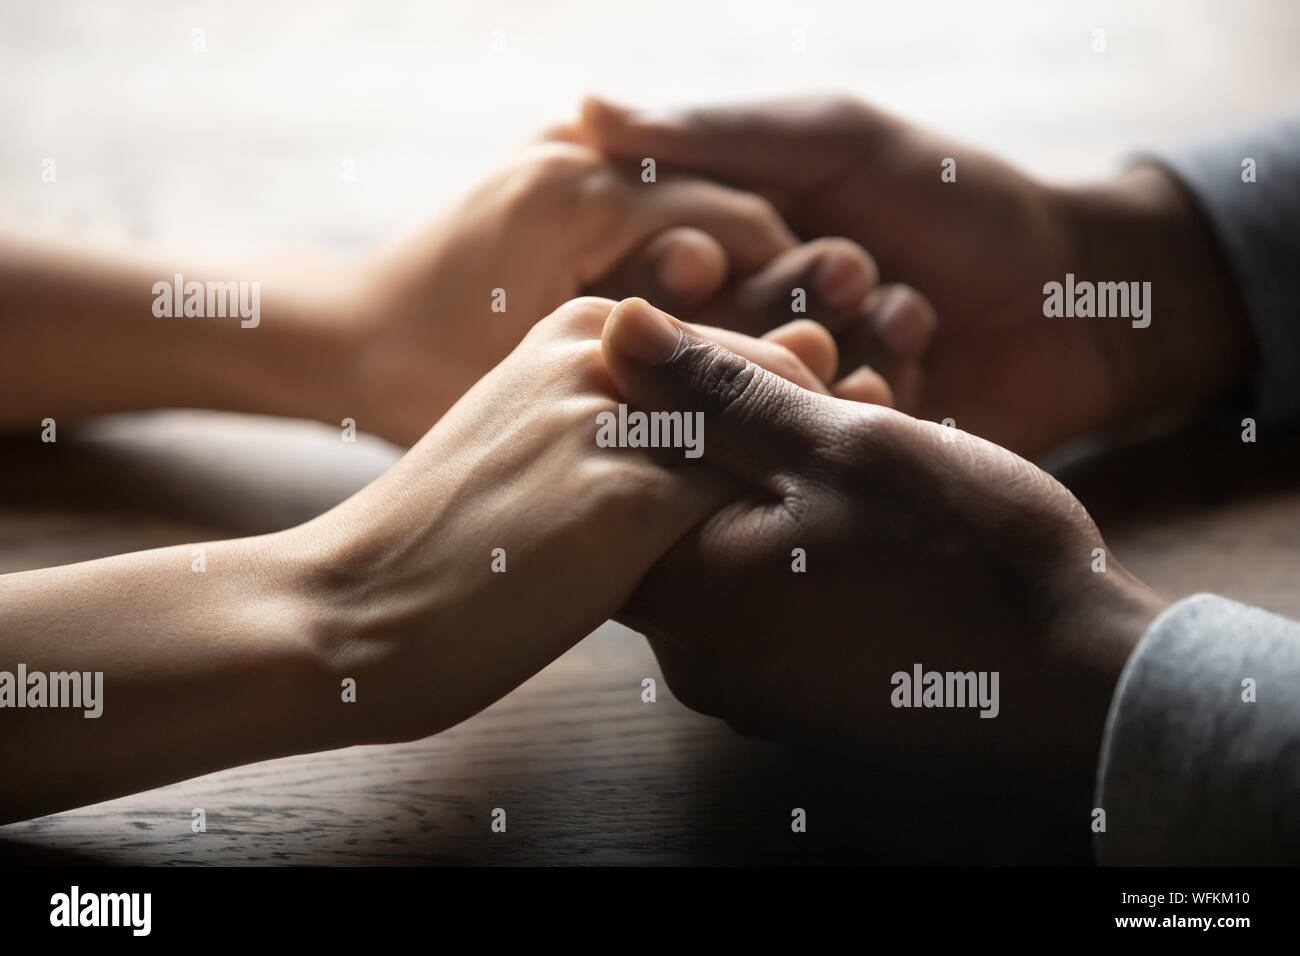 L'origine ethnique mixte couple holding hands on table, Close up view Banque D'Images